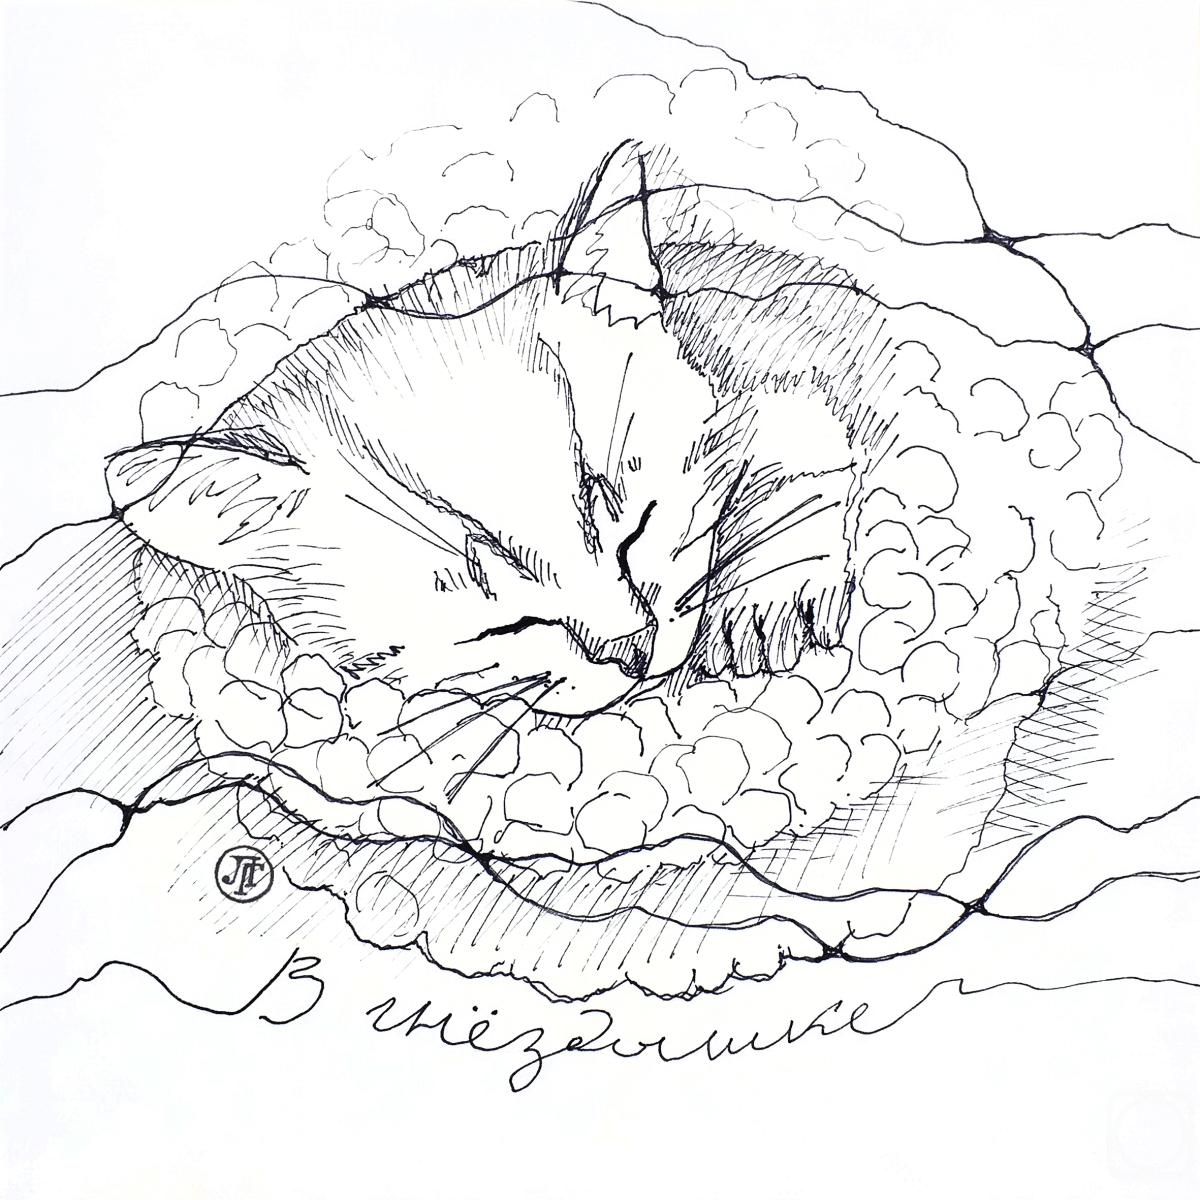 Grebennikova Lyudmila. In the nest. The Cat's Secret series